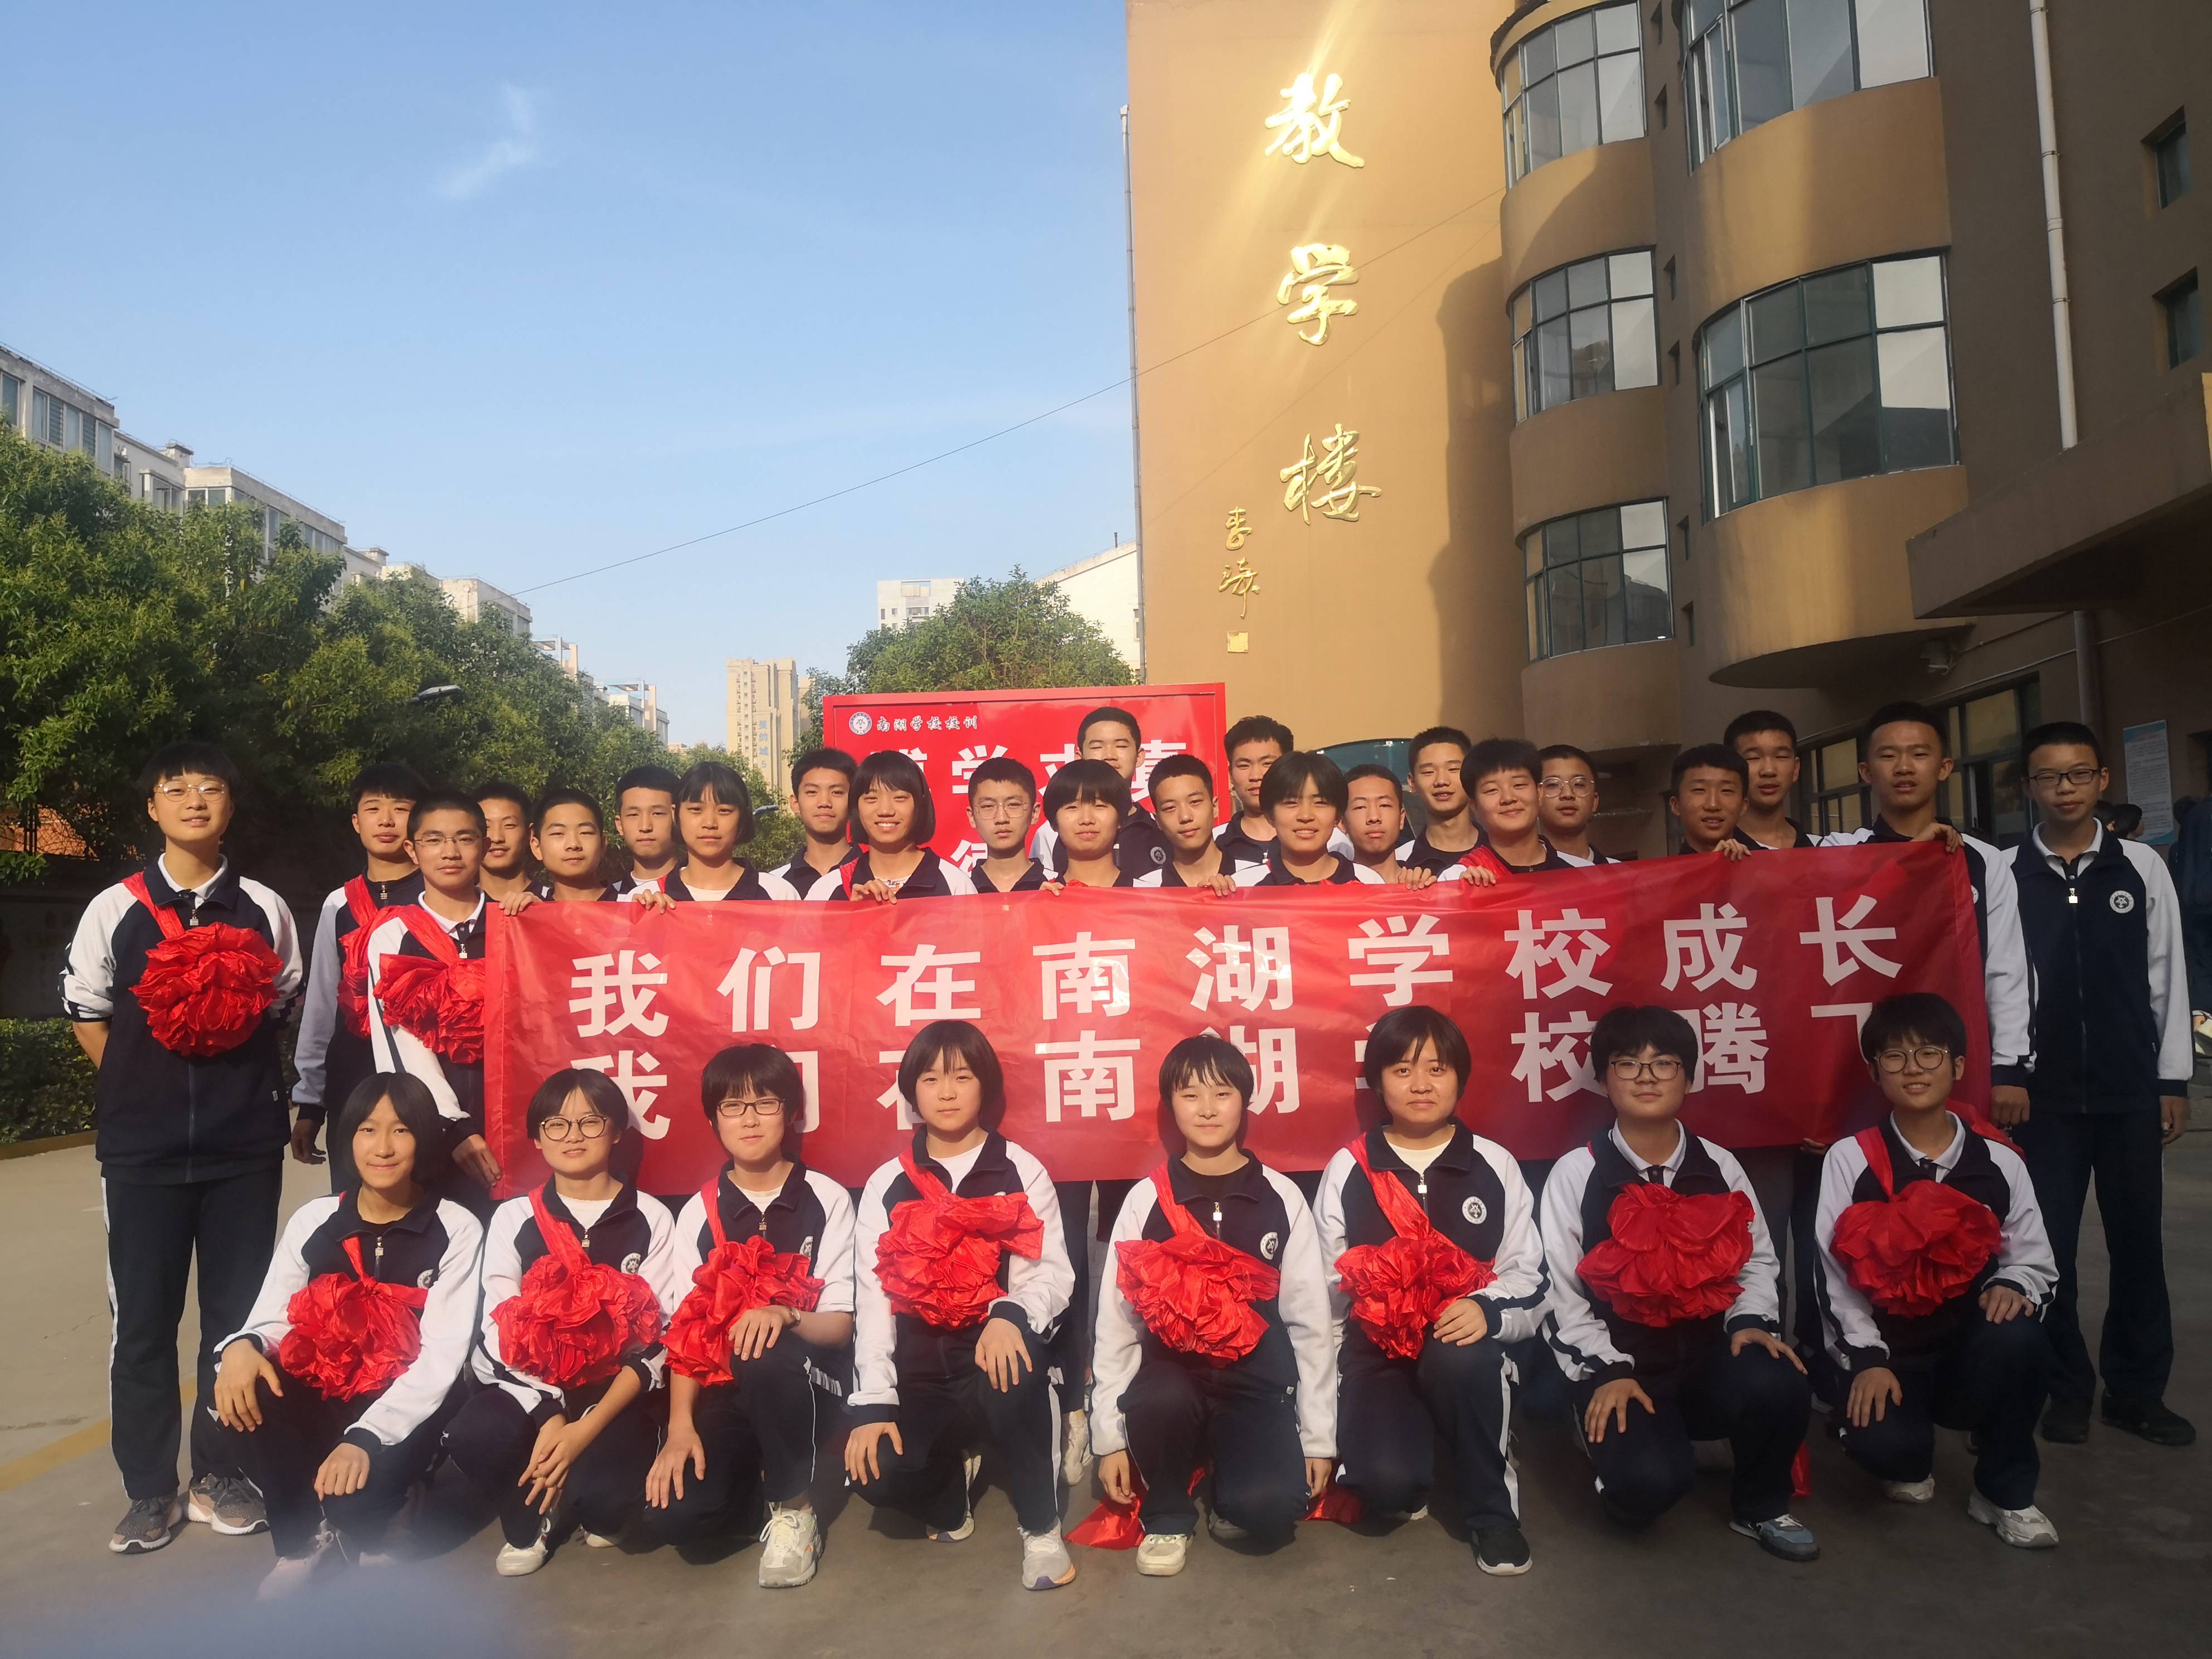 南湖学校是邯郸市第一中学盟校,创办于2014年9月,是邯郸市主城区最早